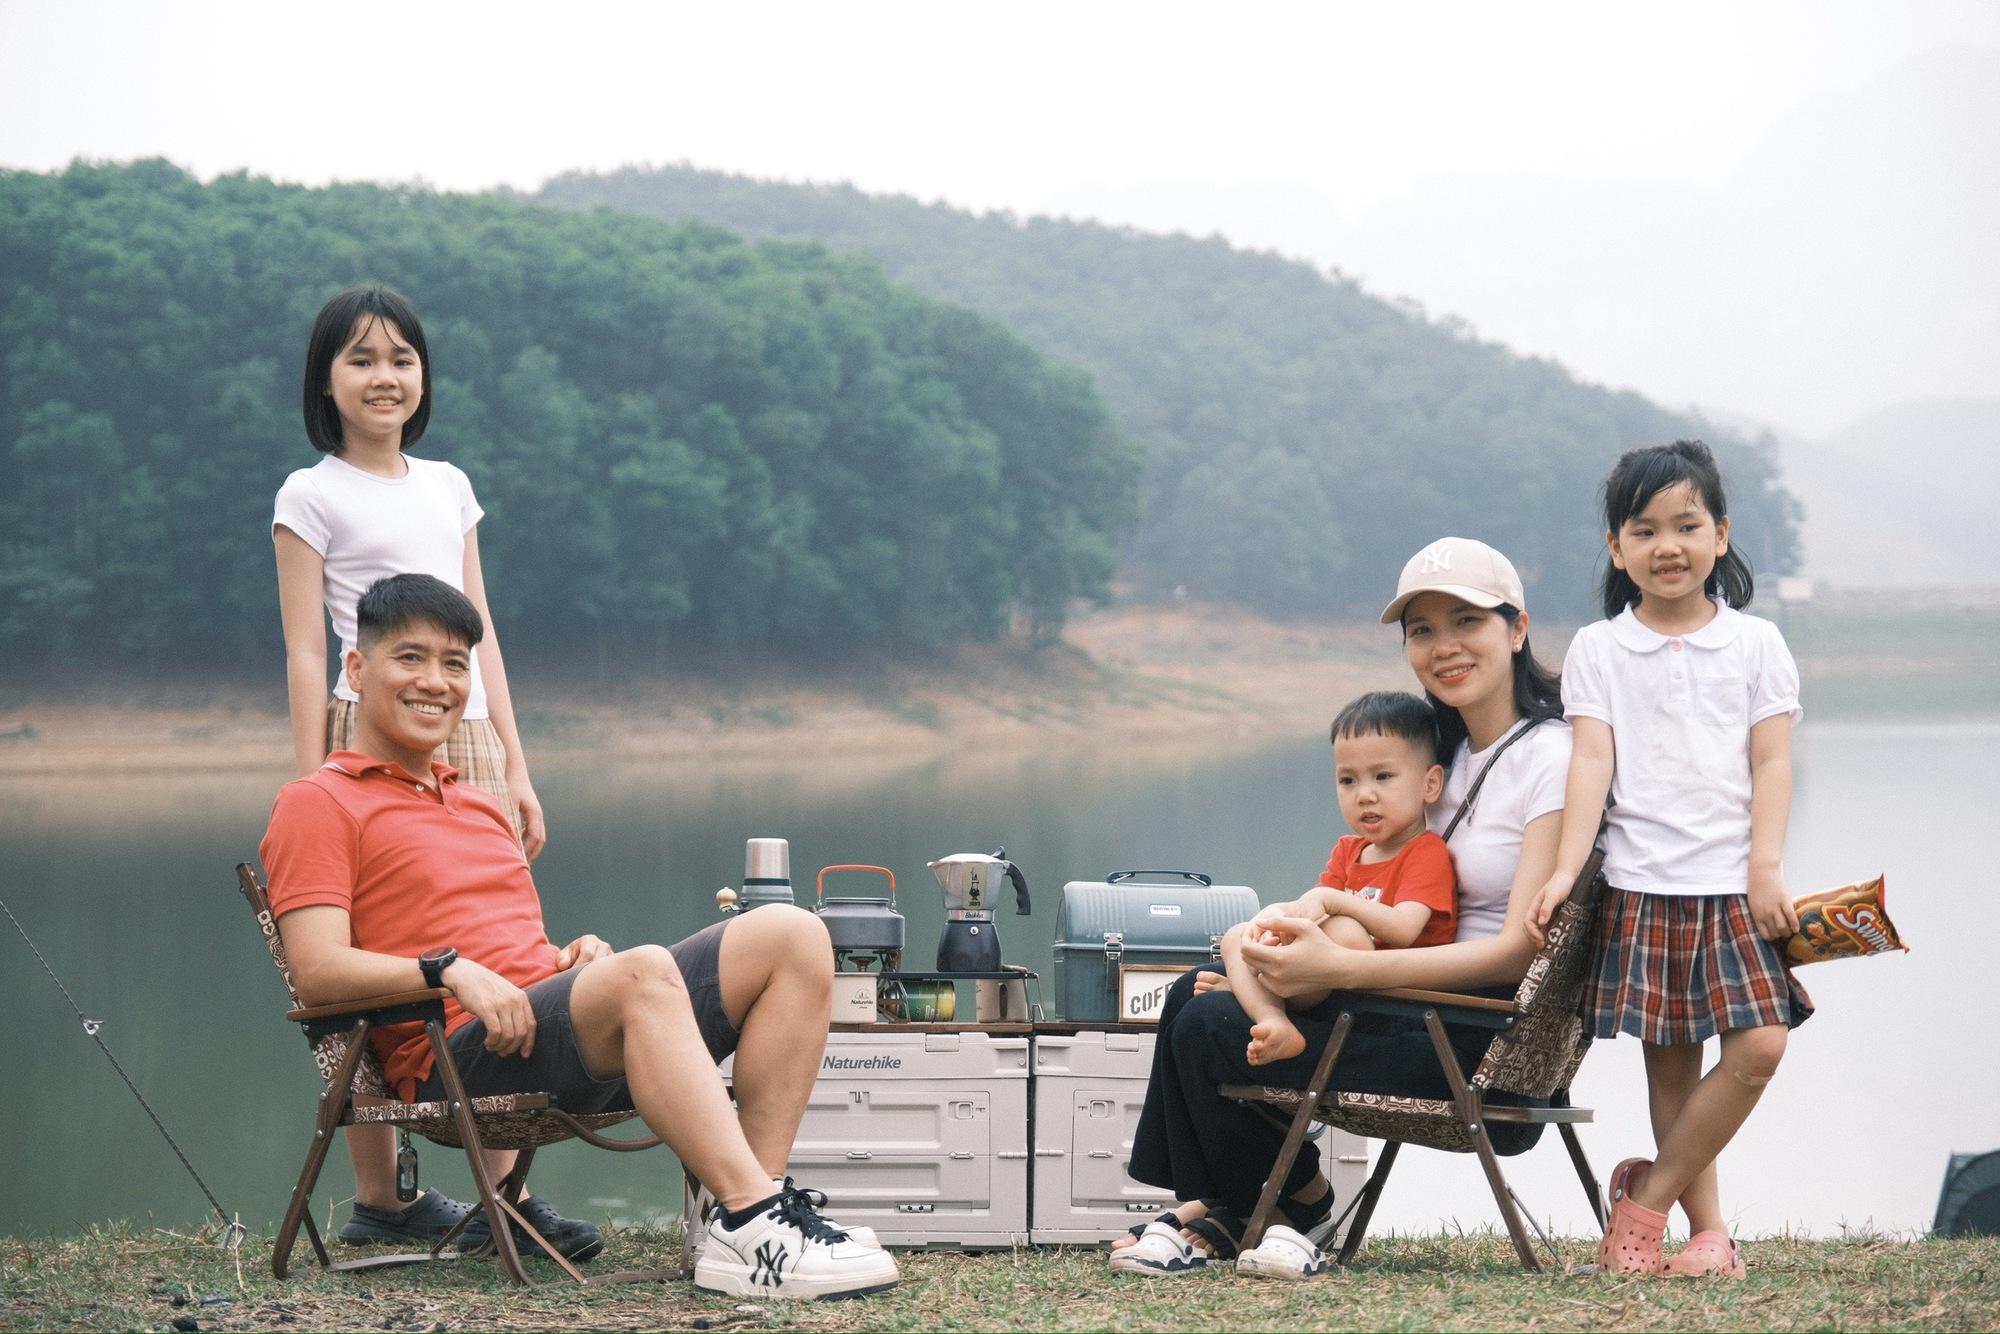 Gia đình nhỏ thưởng thức bữa cơm mùa hè trong chuyến picnic, vừa ăn vừa nghe chim hót, suối chảy róc rách, 